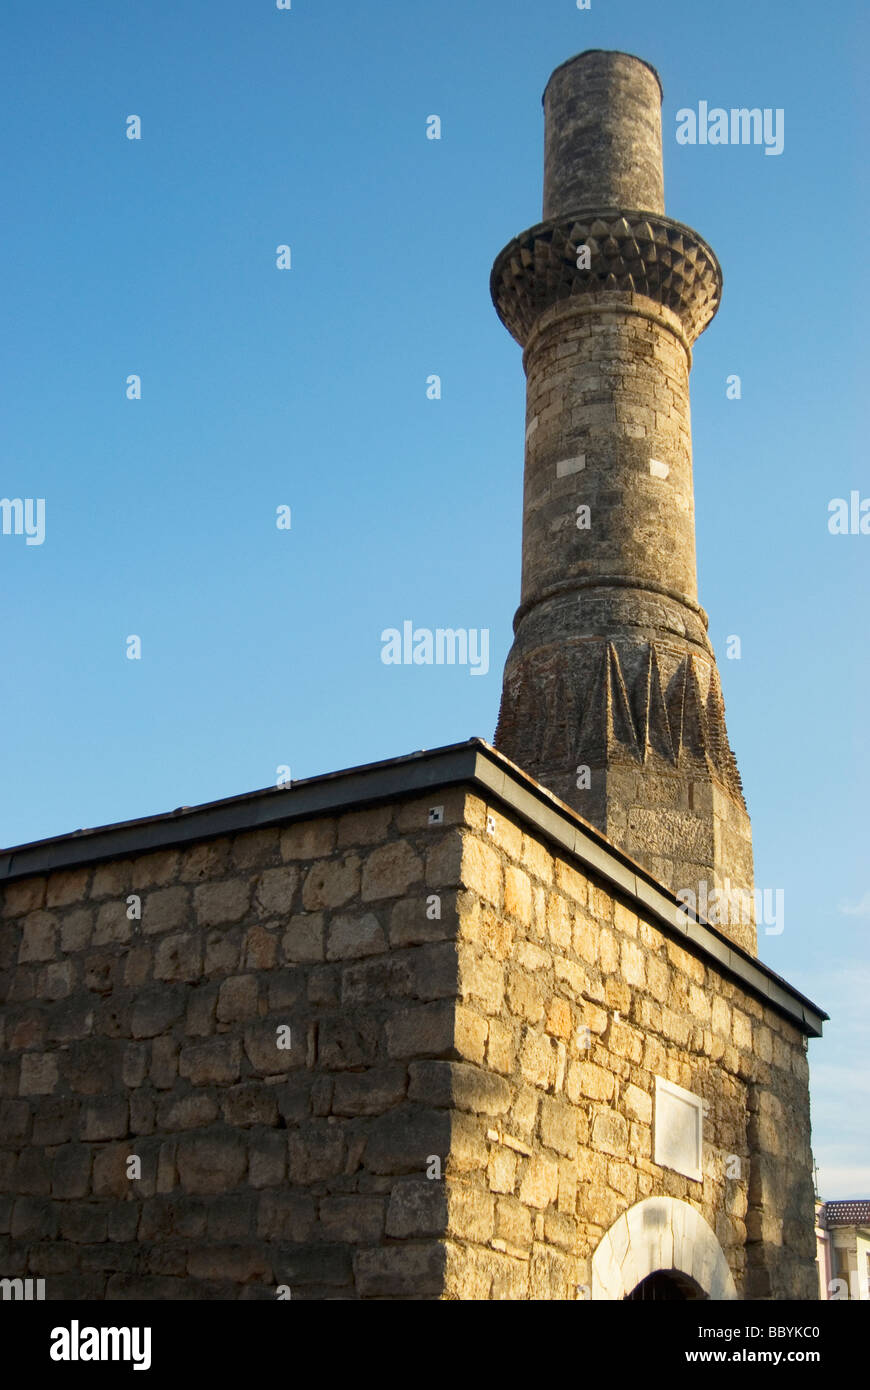 Broken Minaret (Kesik Minare), Kaleiçi, Antalya, Turkey Stock Photo